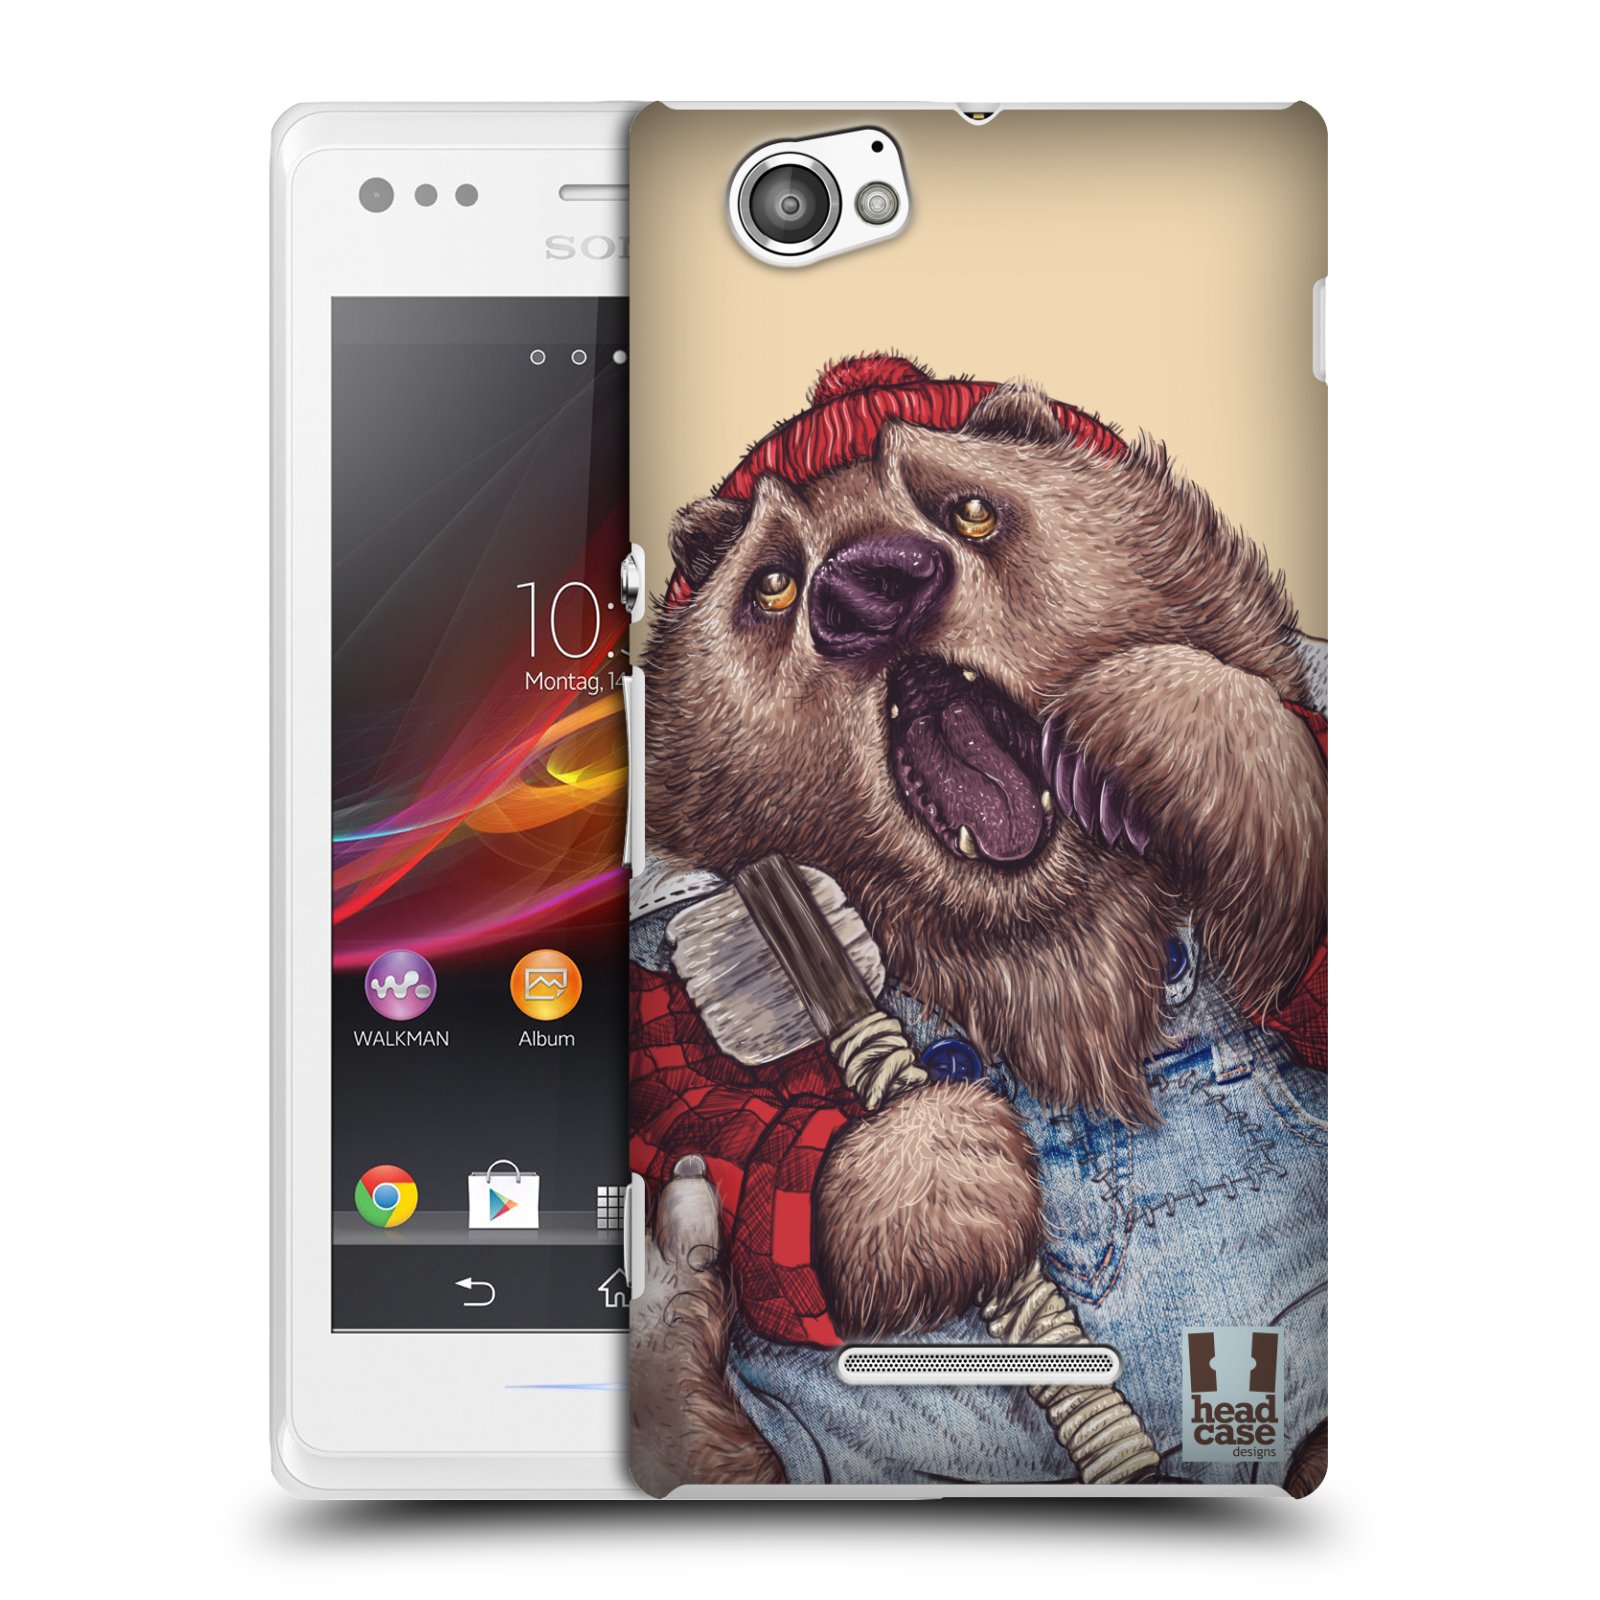 HEAD CASE plastový obal na mobil Sony Xperia M vzor Kreslená zvířátka medvěd